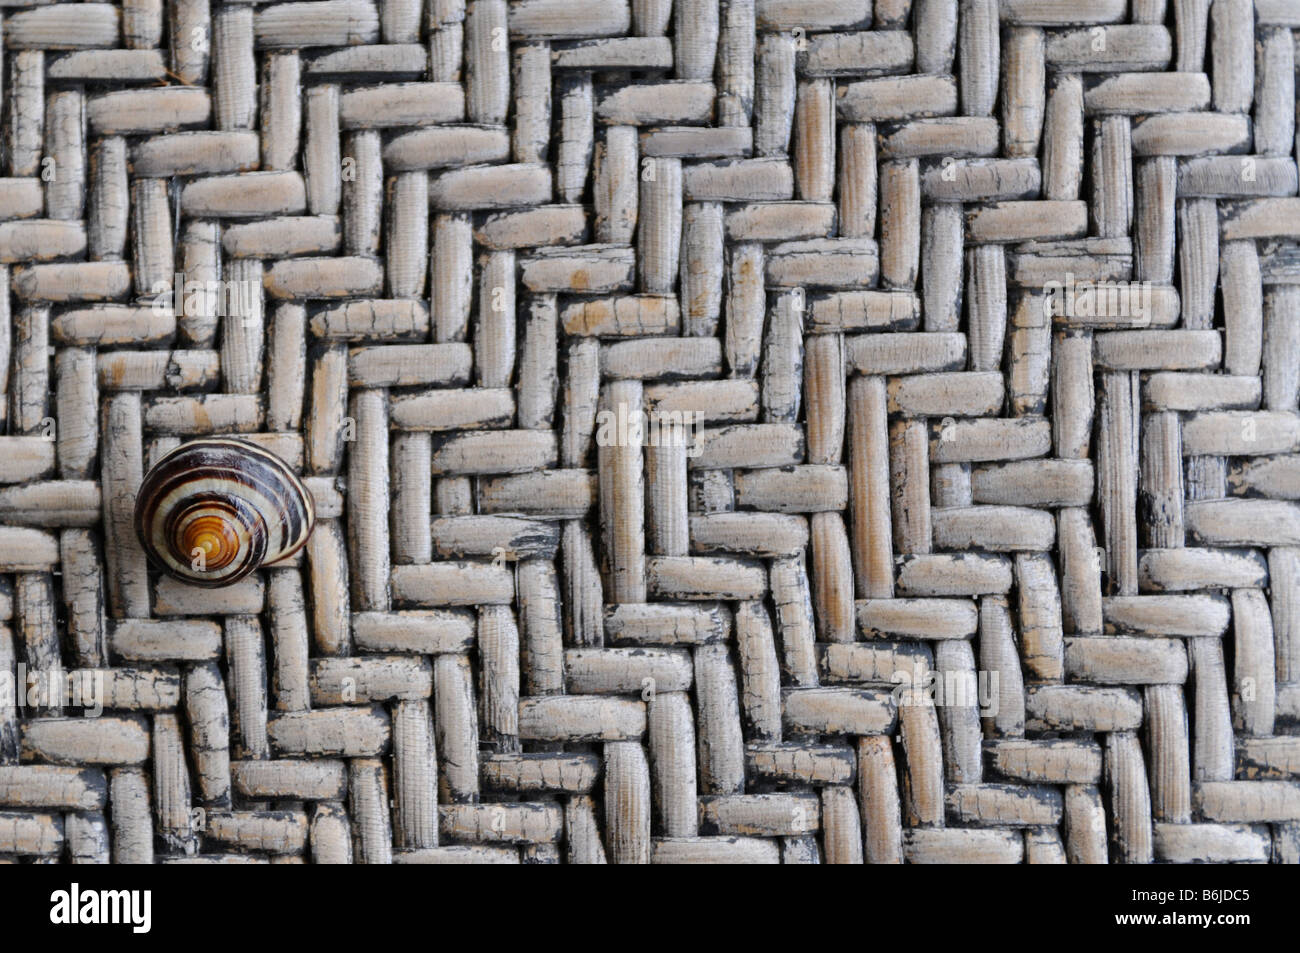 Close-up détail d'un escargot commun sur un banc en osier Banque D'Images